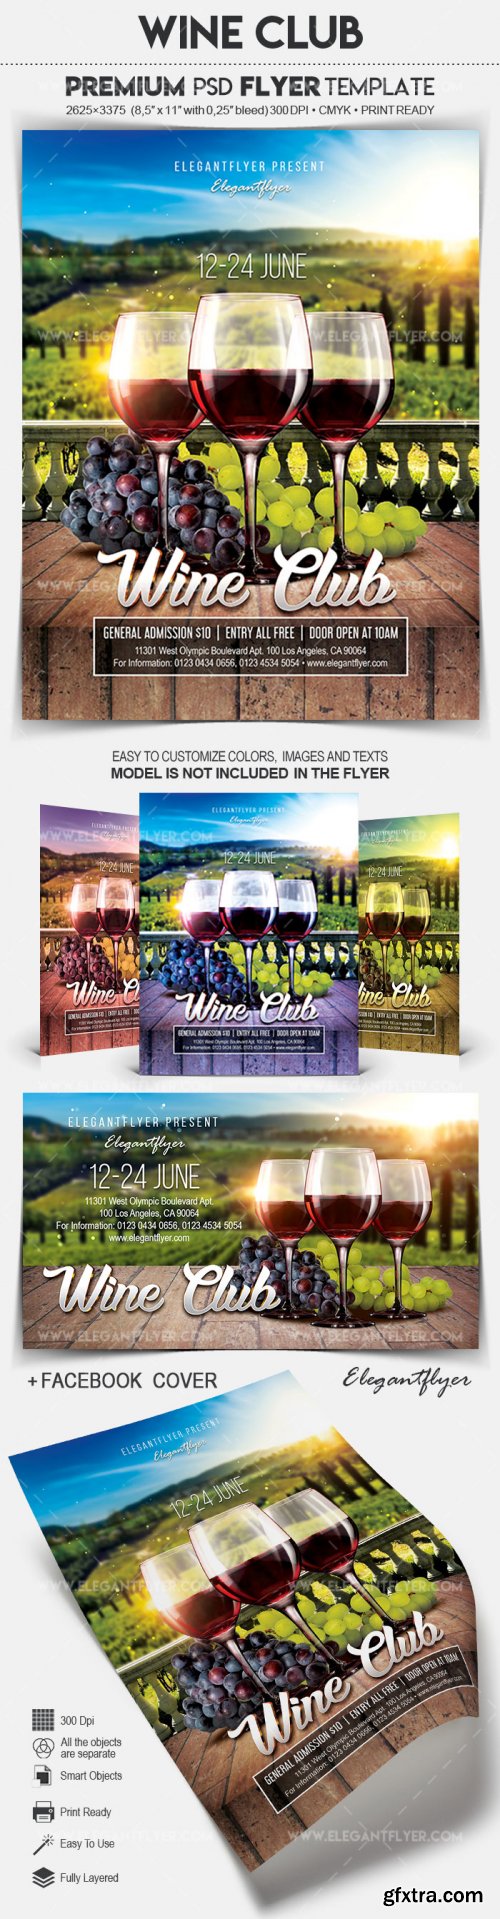 Wine Club V1 2018 Flyer PSD Template